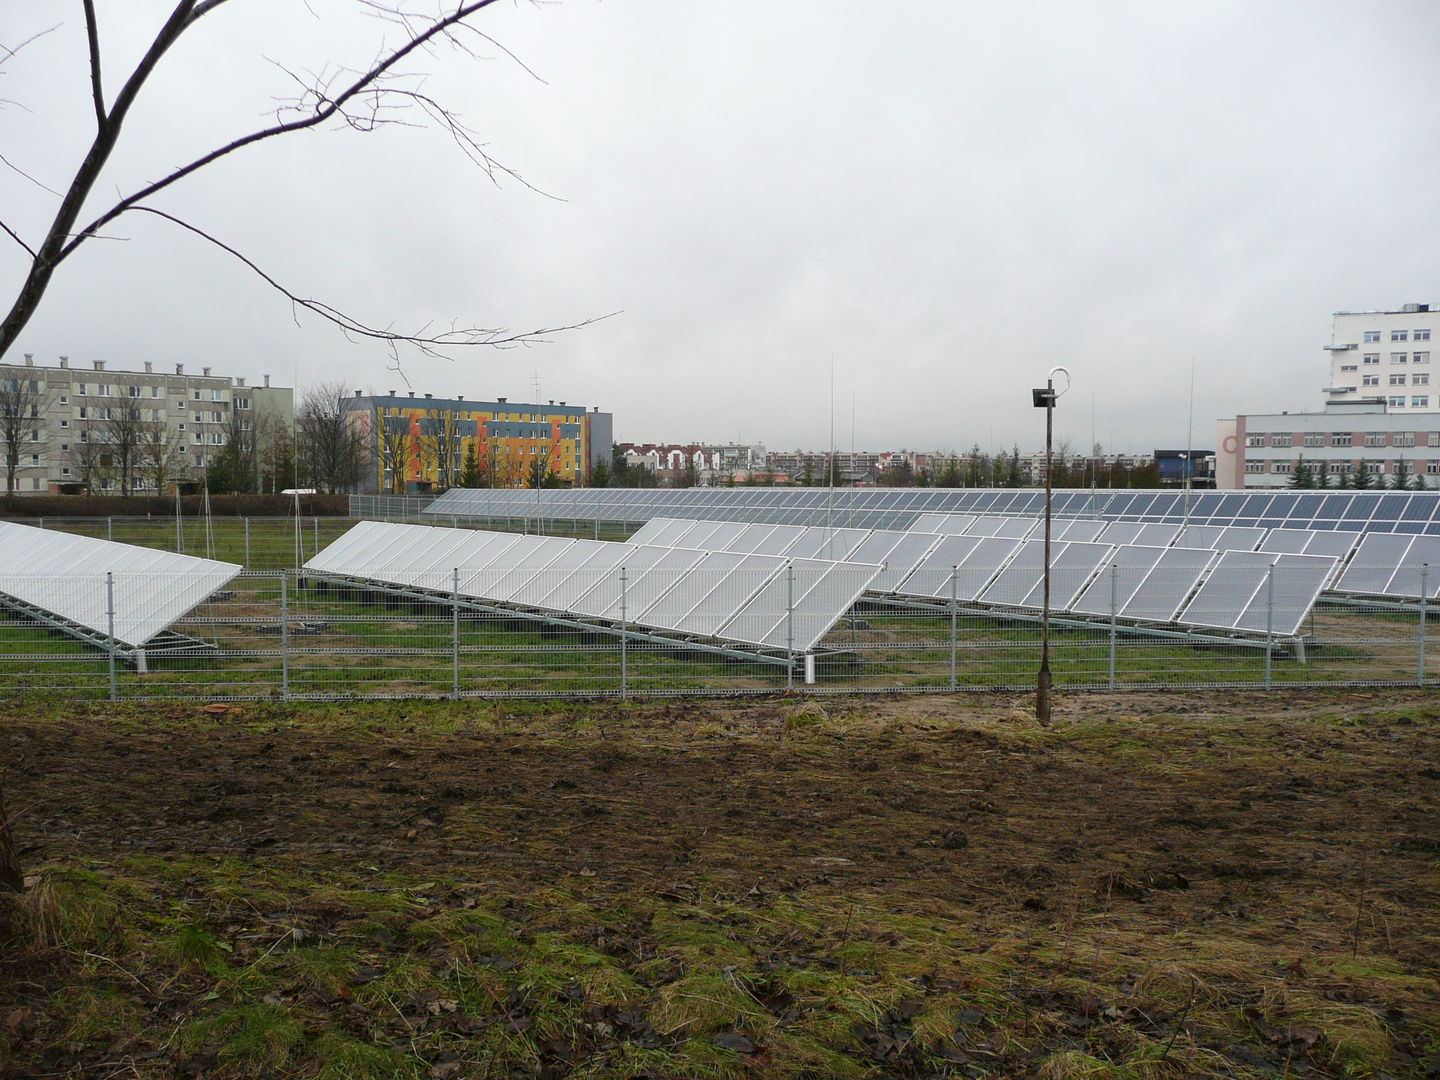 Zdjęcie do wiadomości Budowa elektrycznej instalacji fotowoltaicznej i solarnej na terenie Szpitala Wojewódzkiego w Łomży